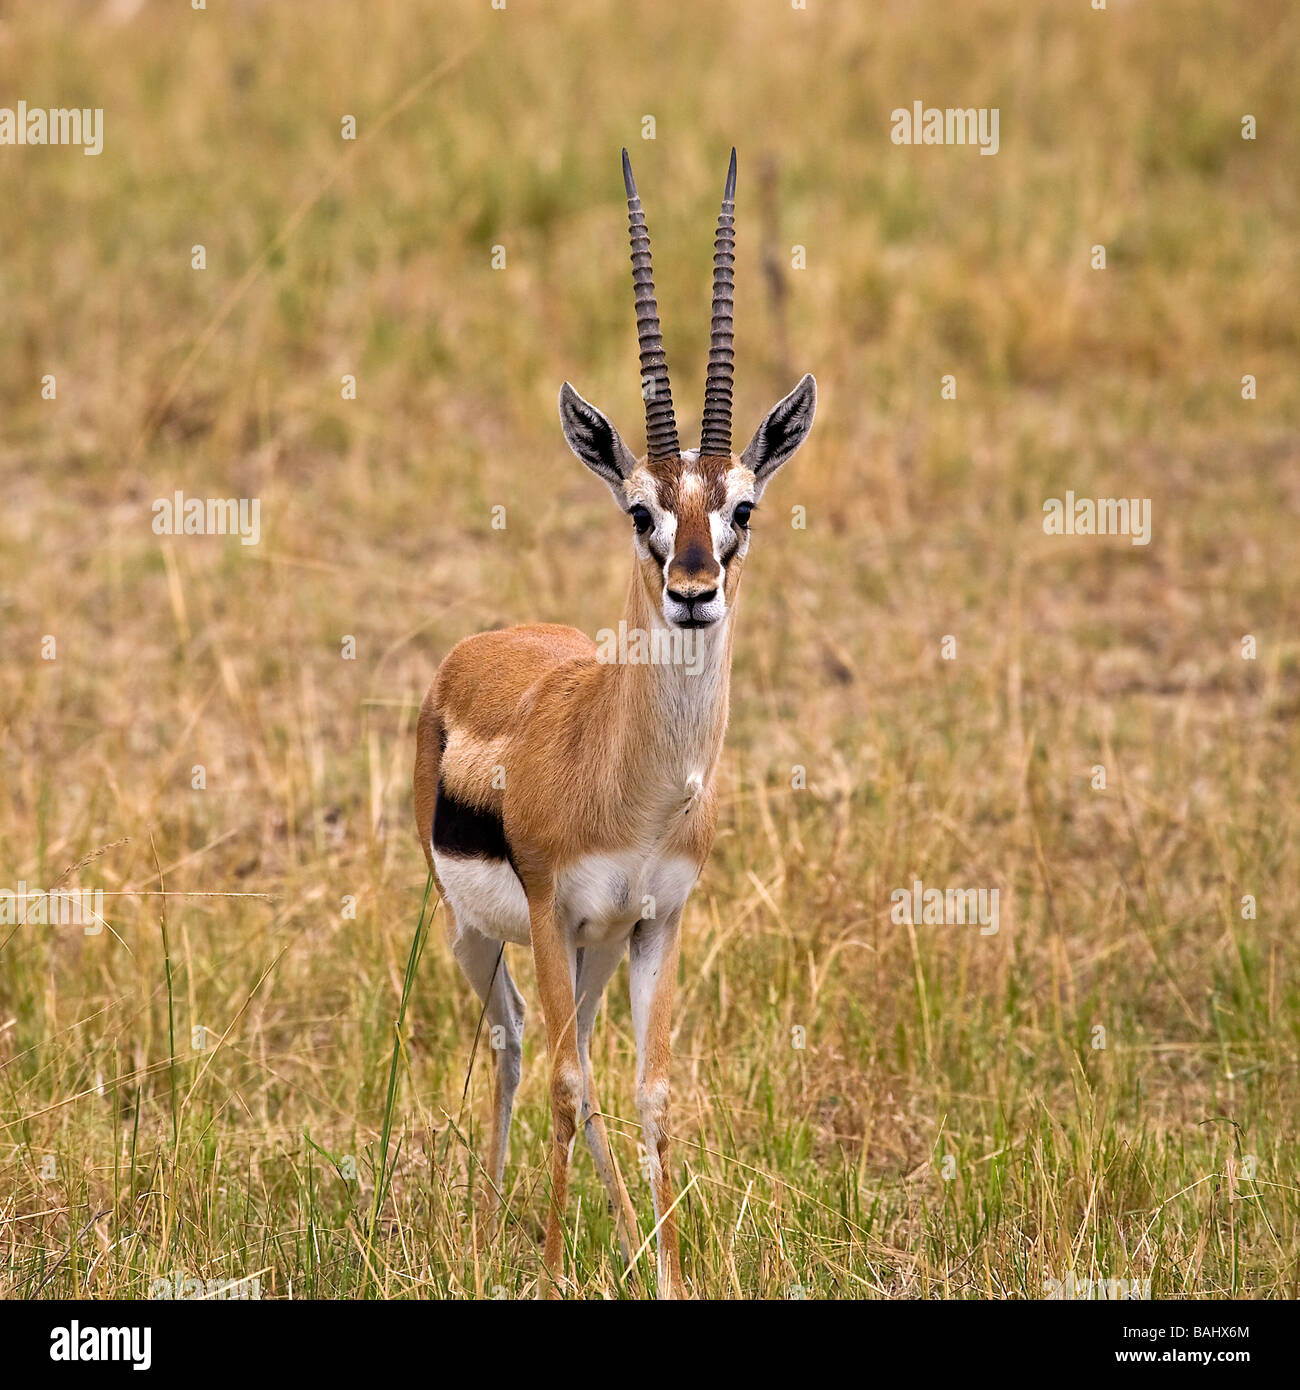 La gazelle de Thomson (Eudorcas thomsoni) ; le Kenya, Afrique ; Gazelle dans la nature Banque D'Images